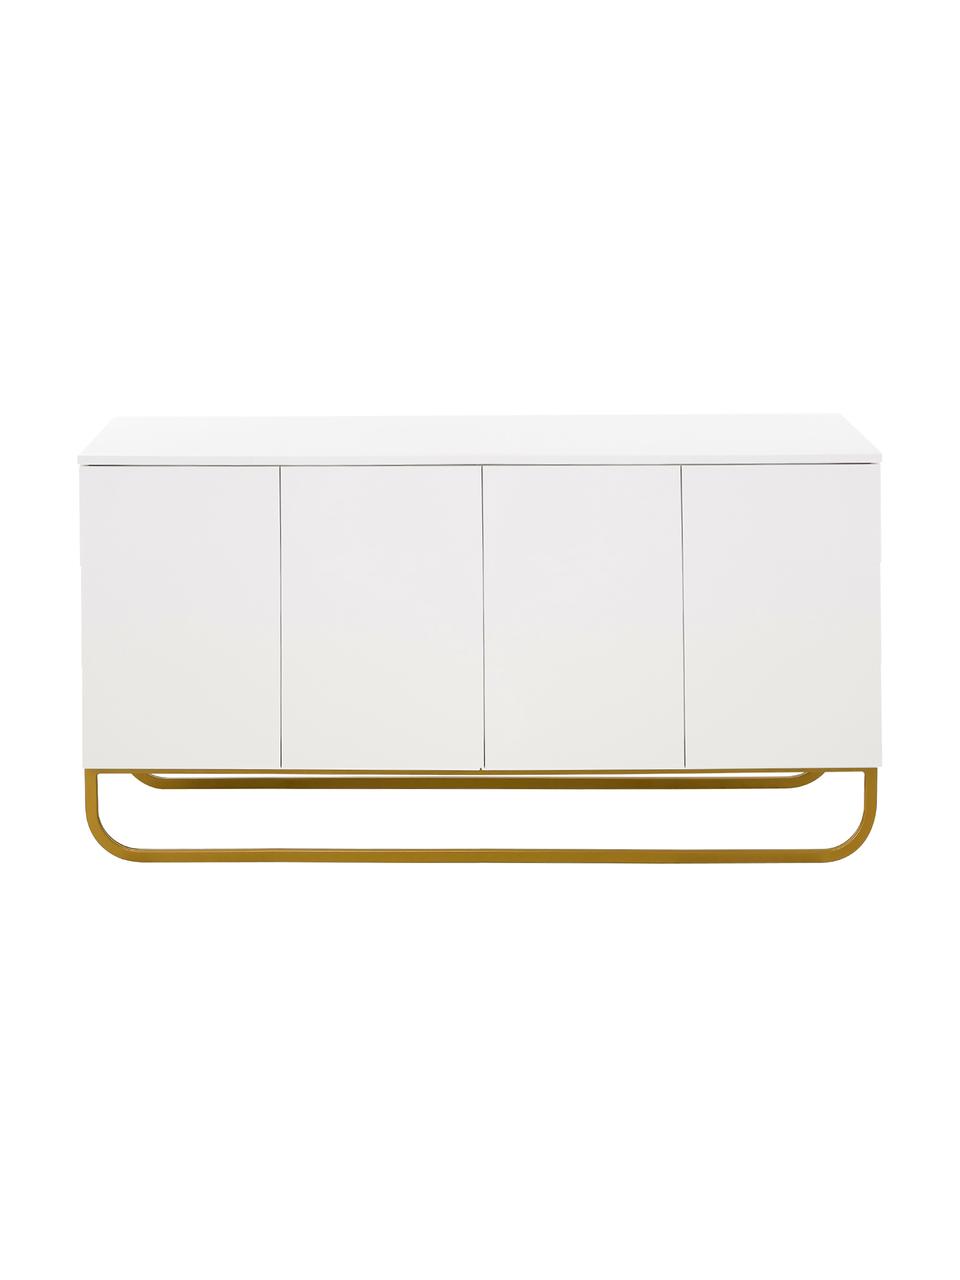 Klasická skříňka Sanford, Bílá, zlatá, Š 160 cm, V 83 cm